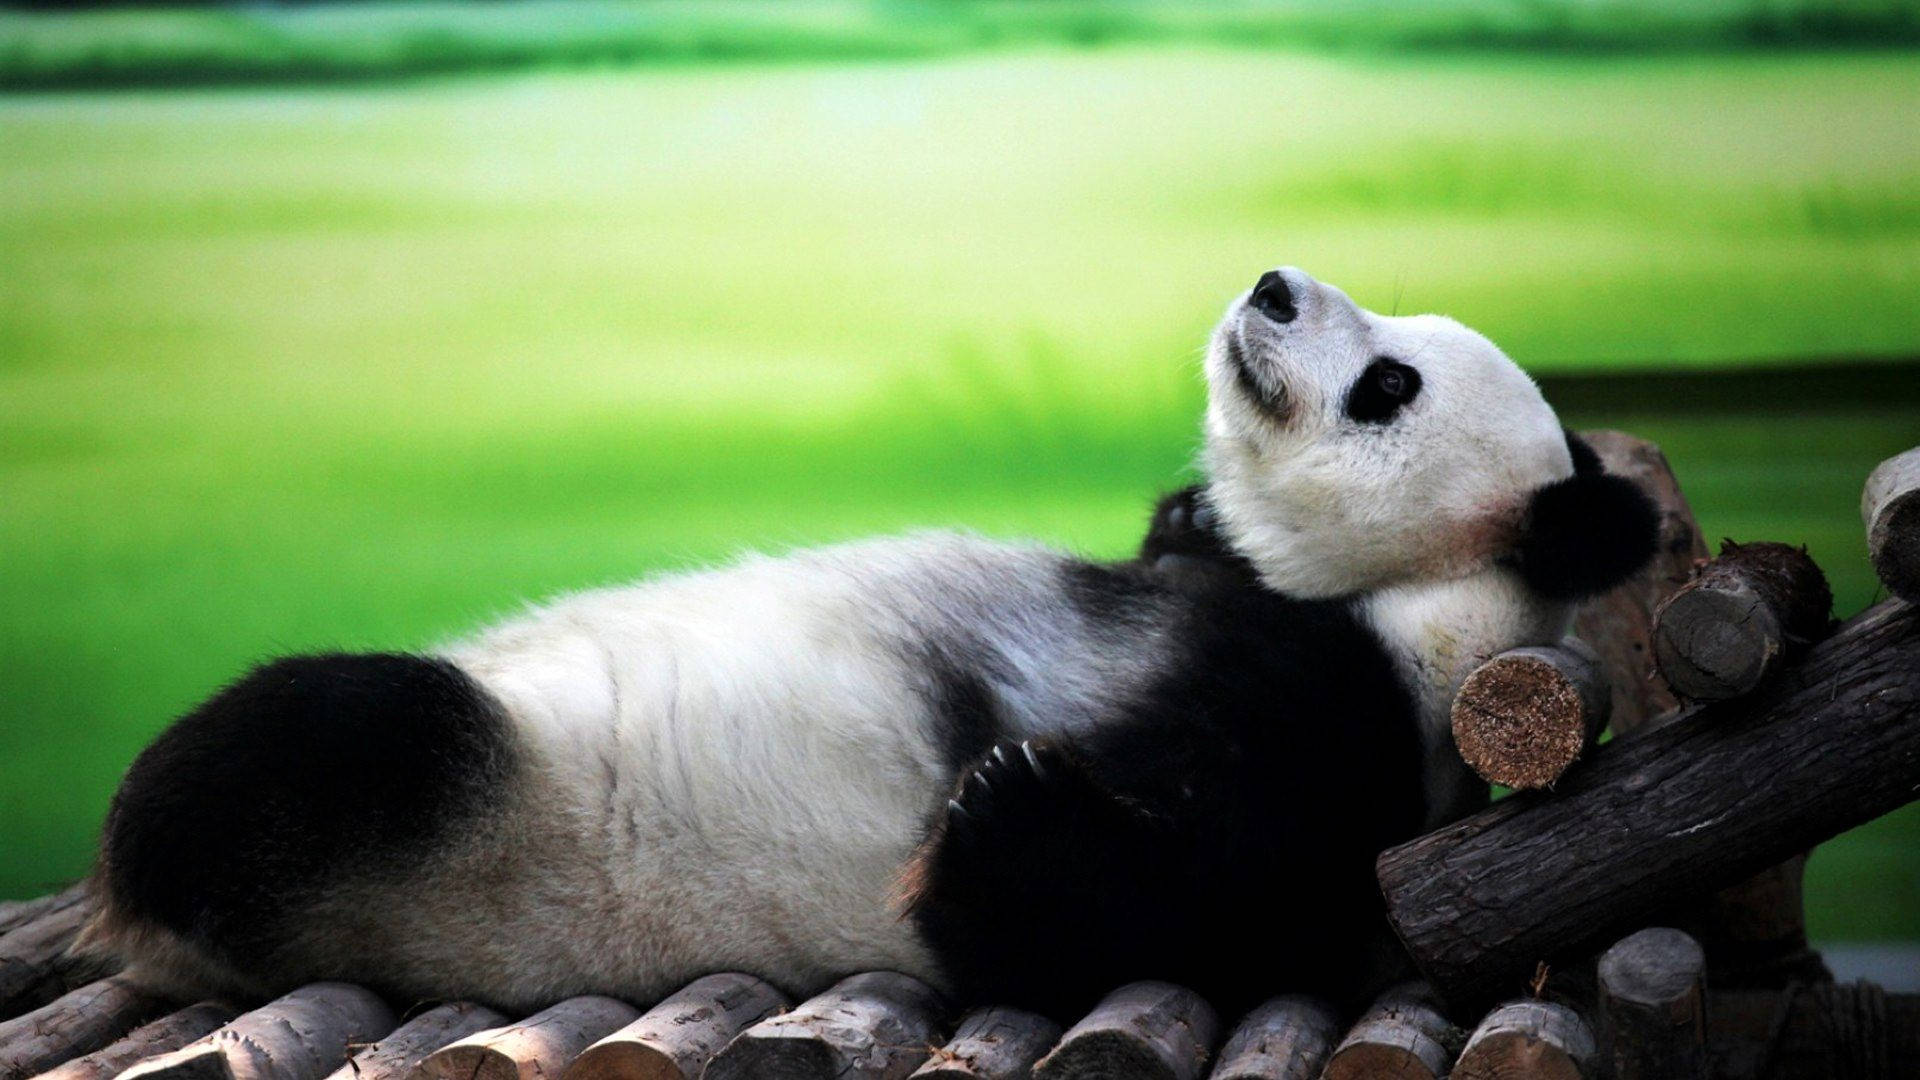 Cute Panda Relaxing